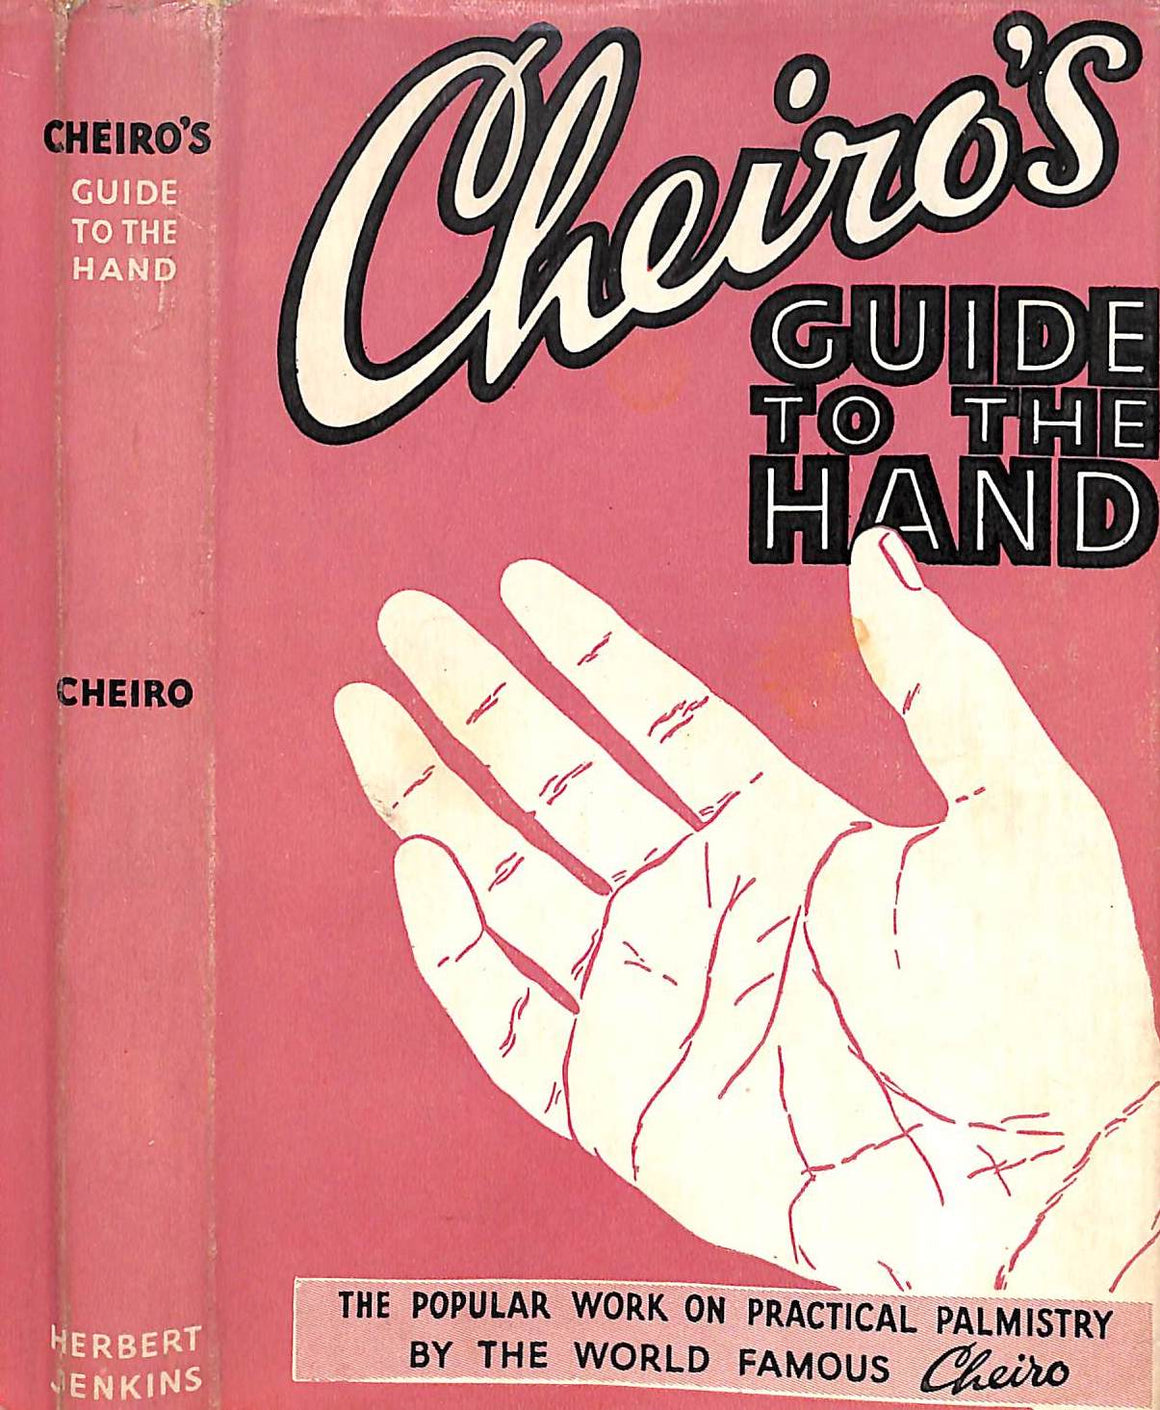 "Cheiro's Guide To The Hand" Herbert Jenkins